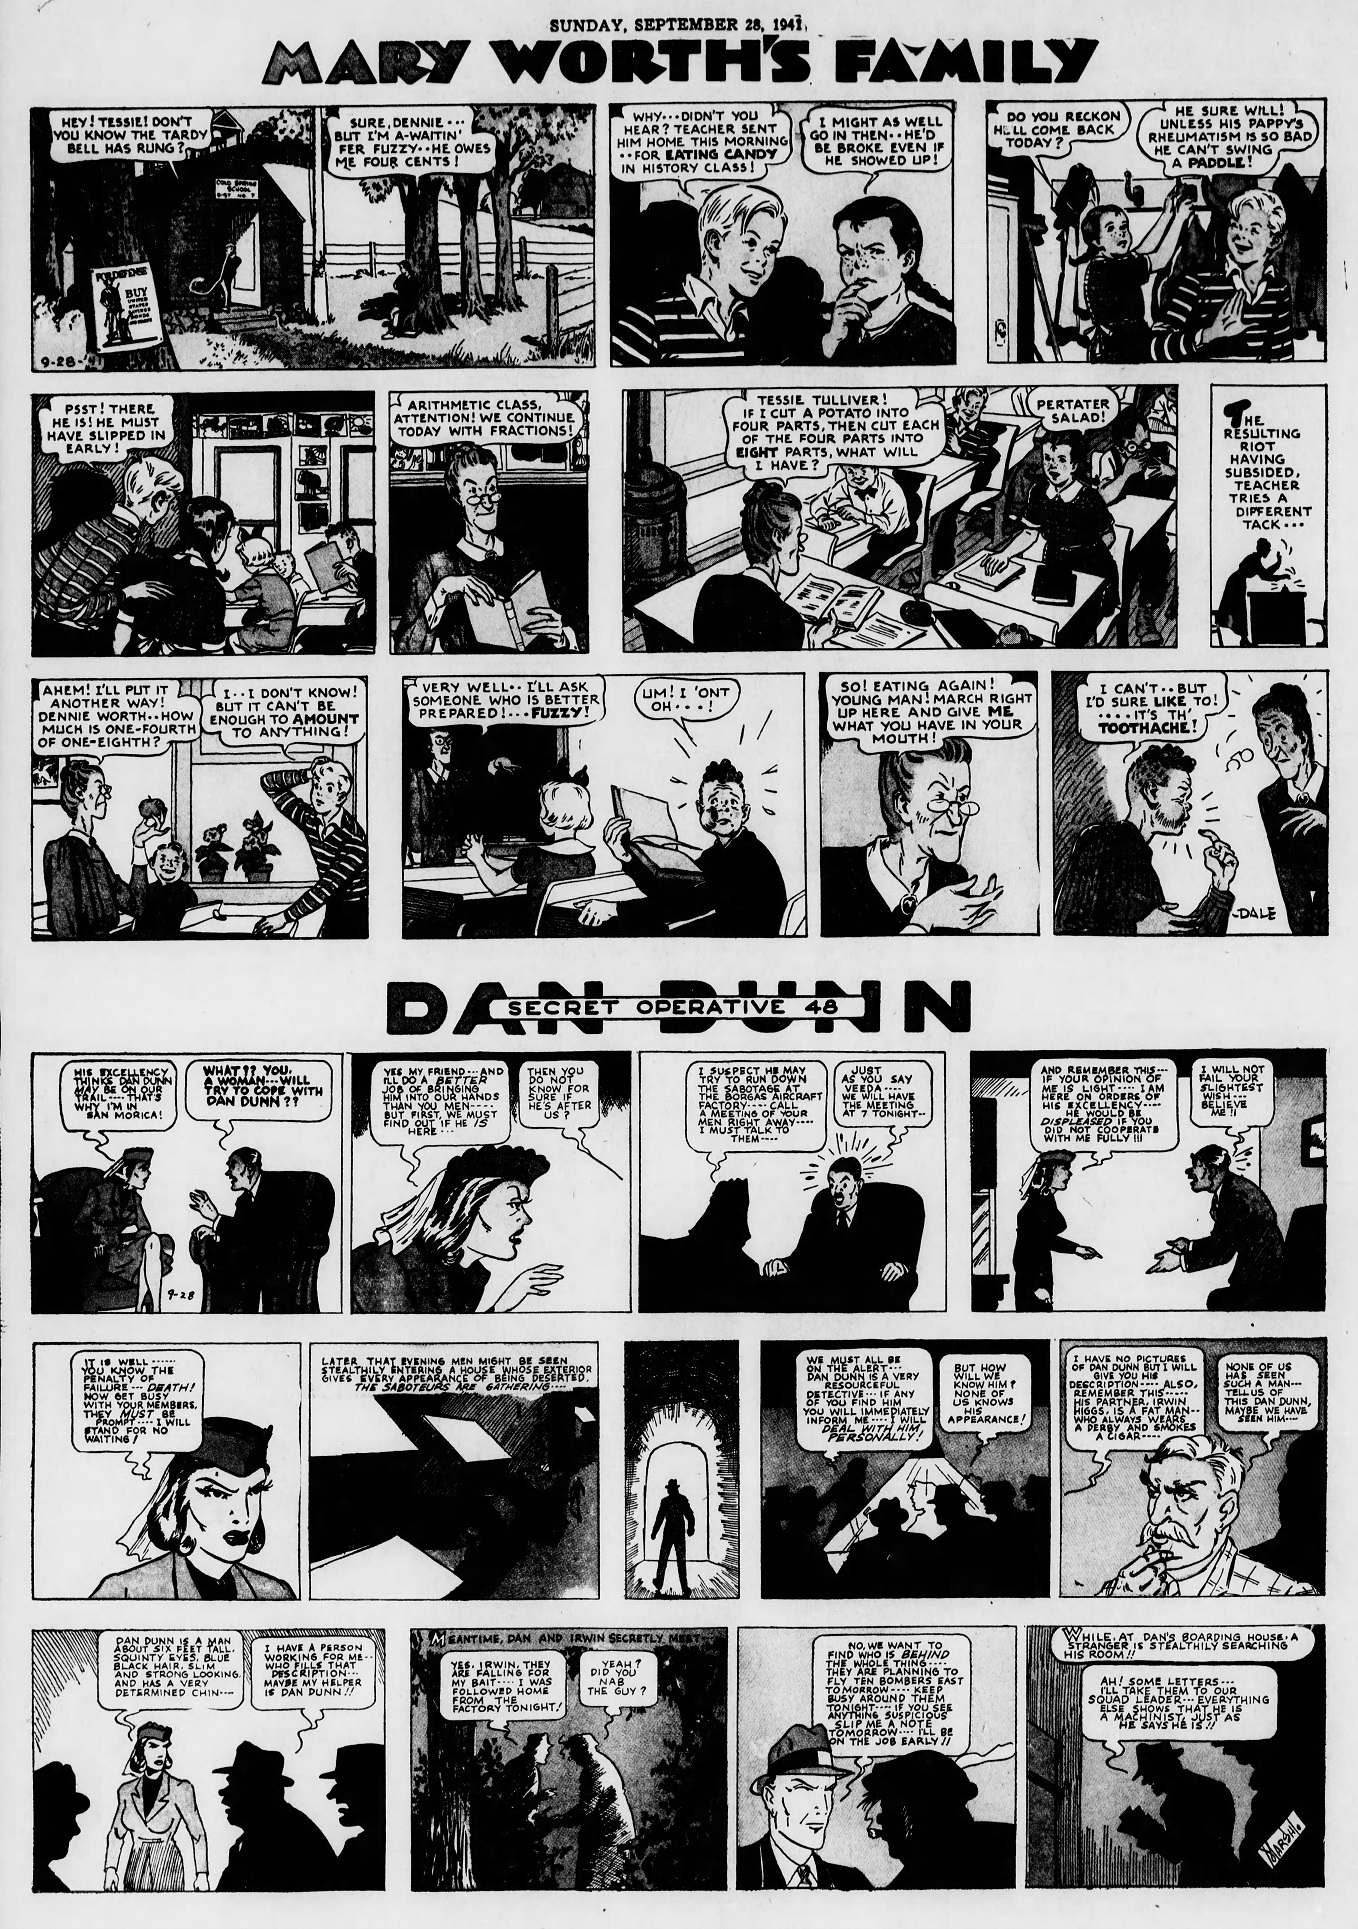 The_Brooklyn_Daily_Eagle_Sun__Sep_28__1941_(7).jpg